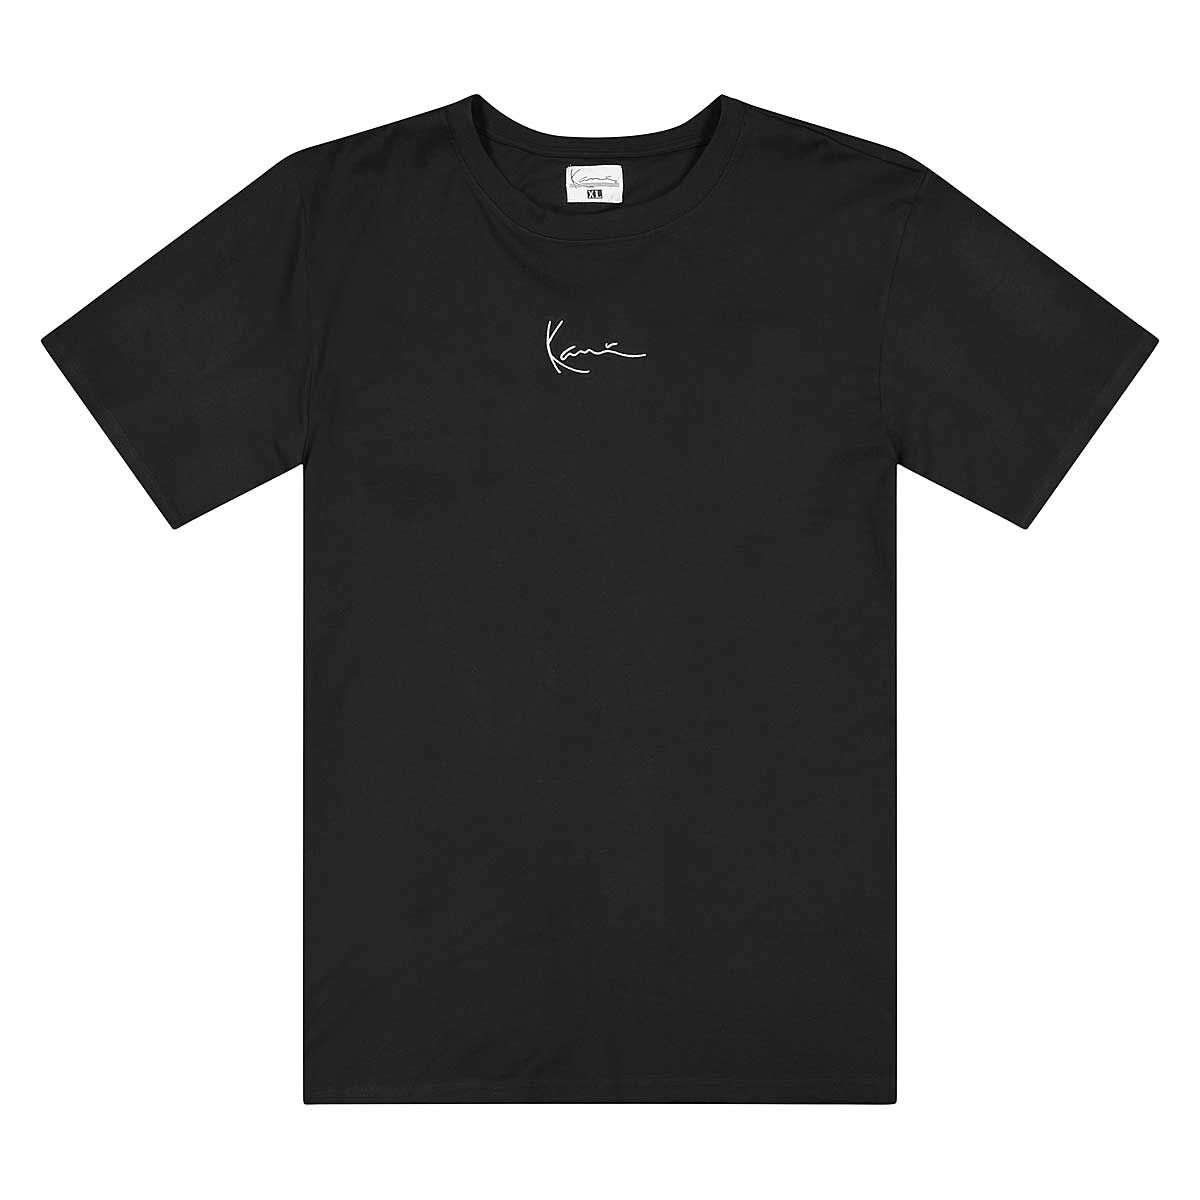 Vêtements Hommes | Signature T-Shirt - PE78194